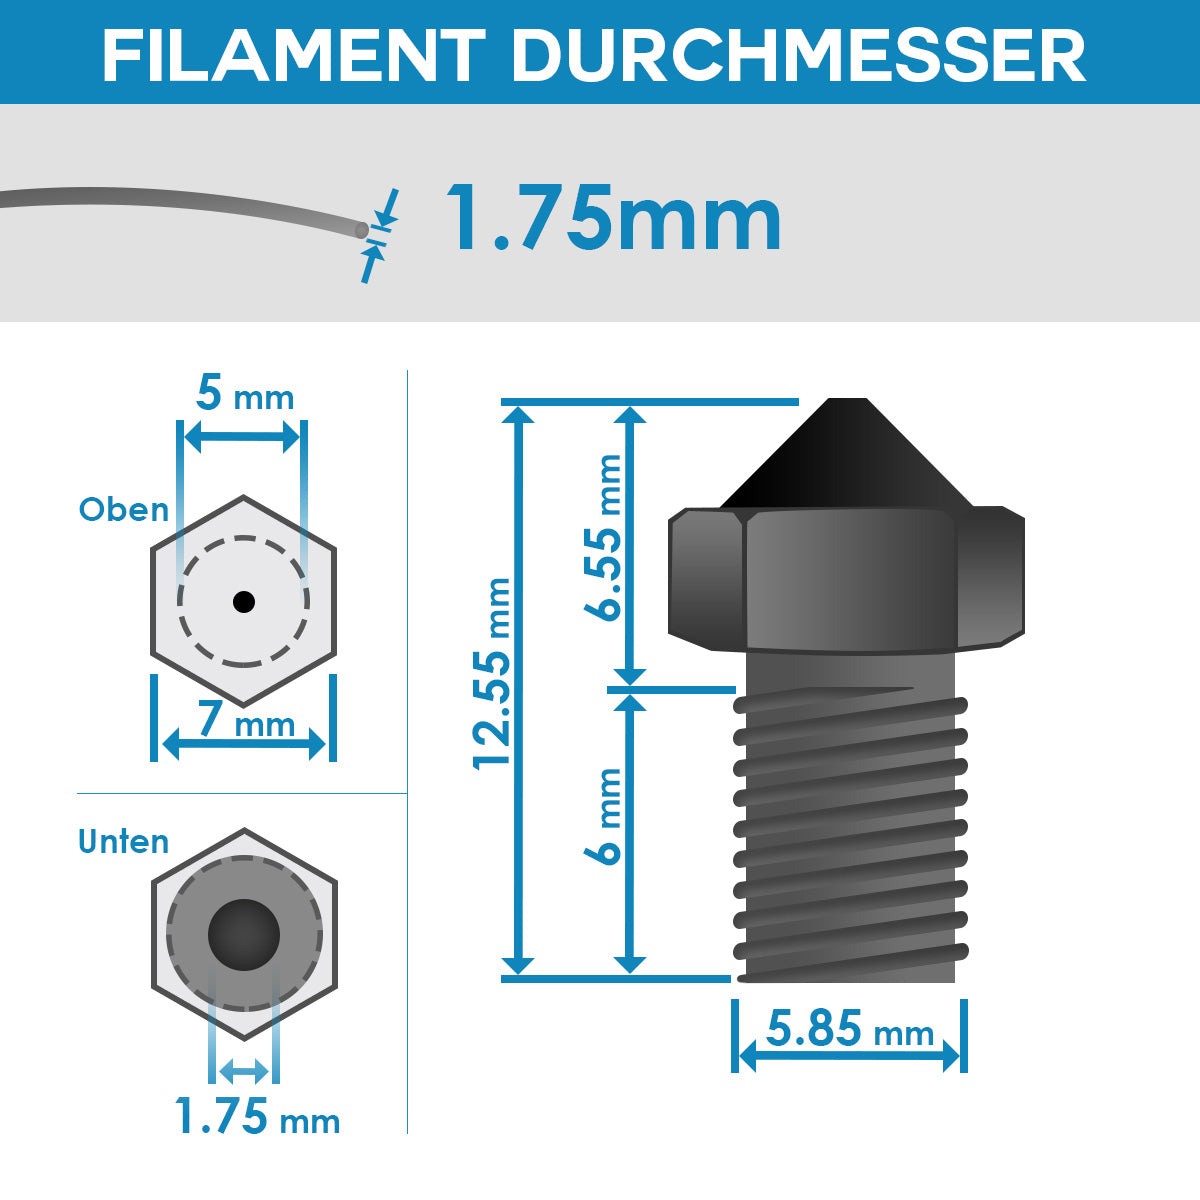 Nozzle Düse für 3D Drucker 0,4mm Extruder Druckkopf für 1,75mm 3mm Filament, jetzt im Dinngs Onlineshop entdecken und bestellen!